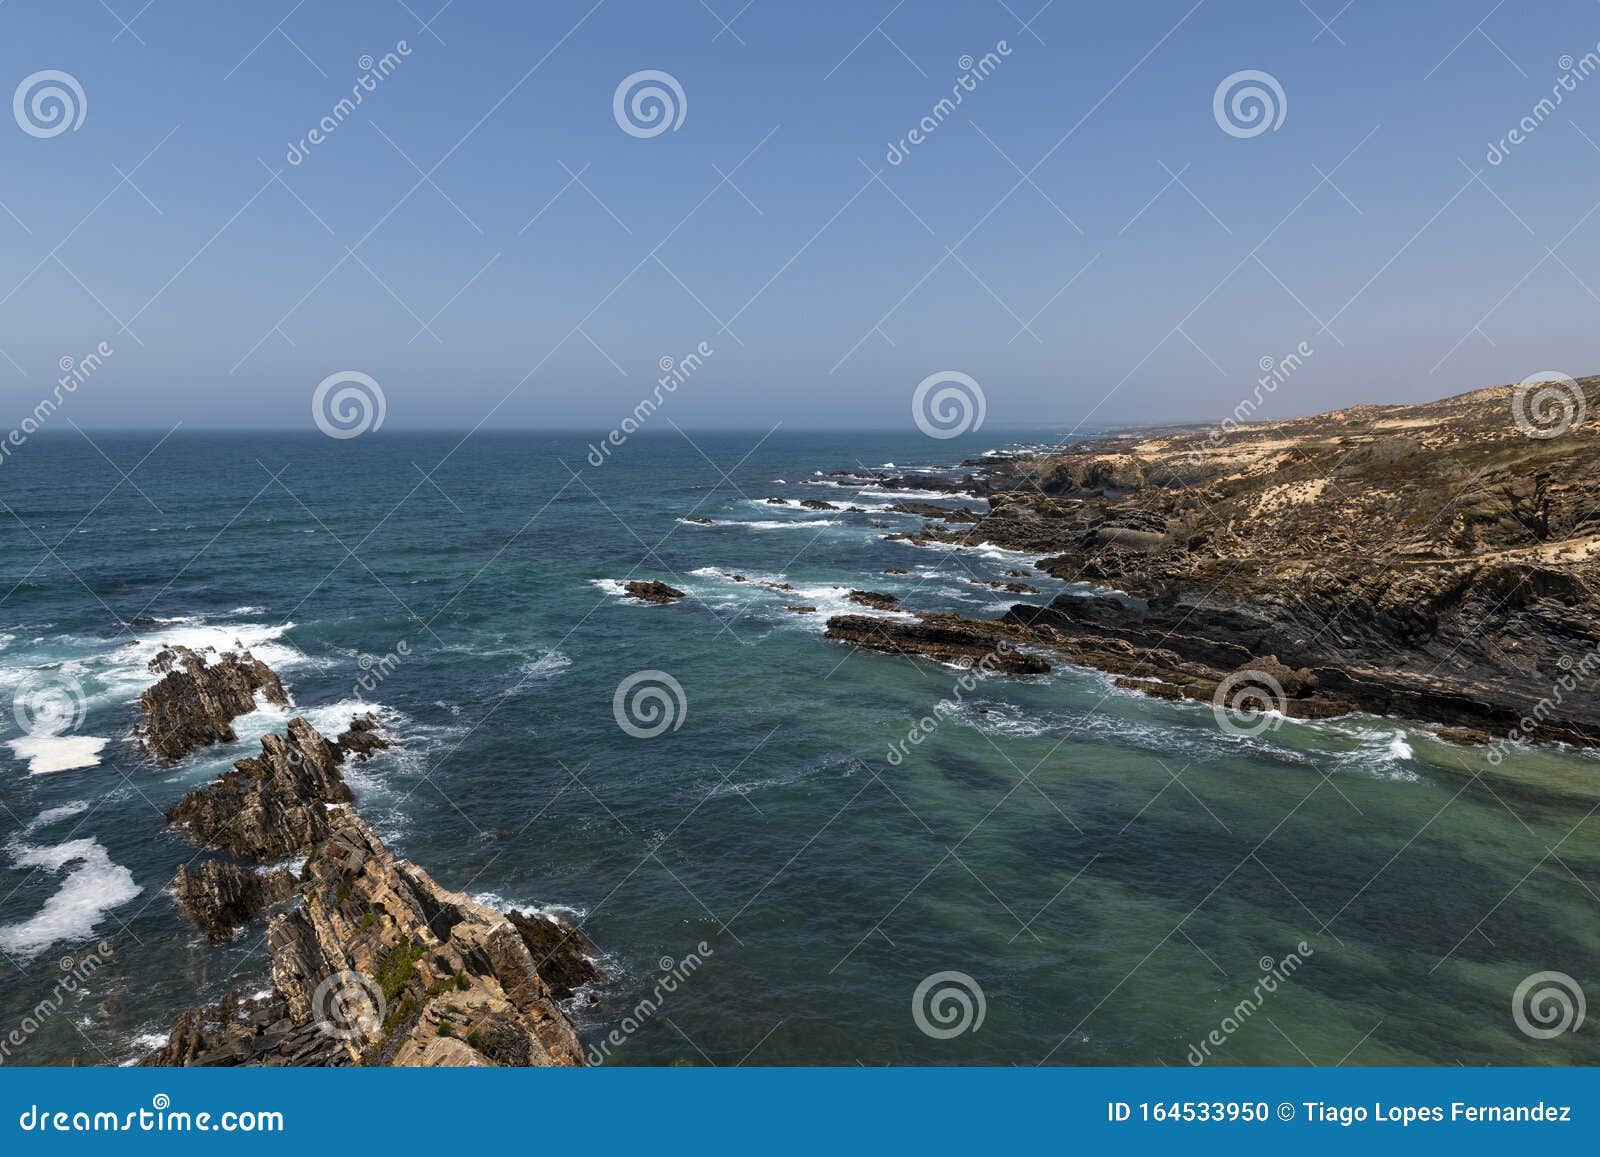 scenic view of the coastline near almograve, at the vicentine coast, in alentejo